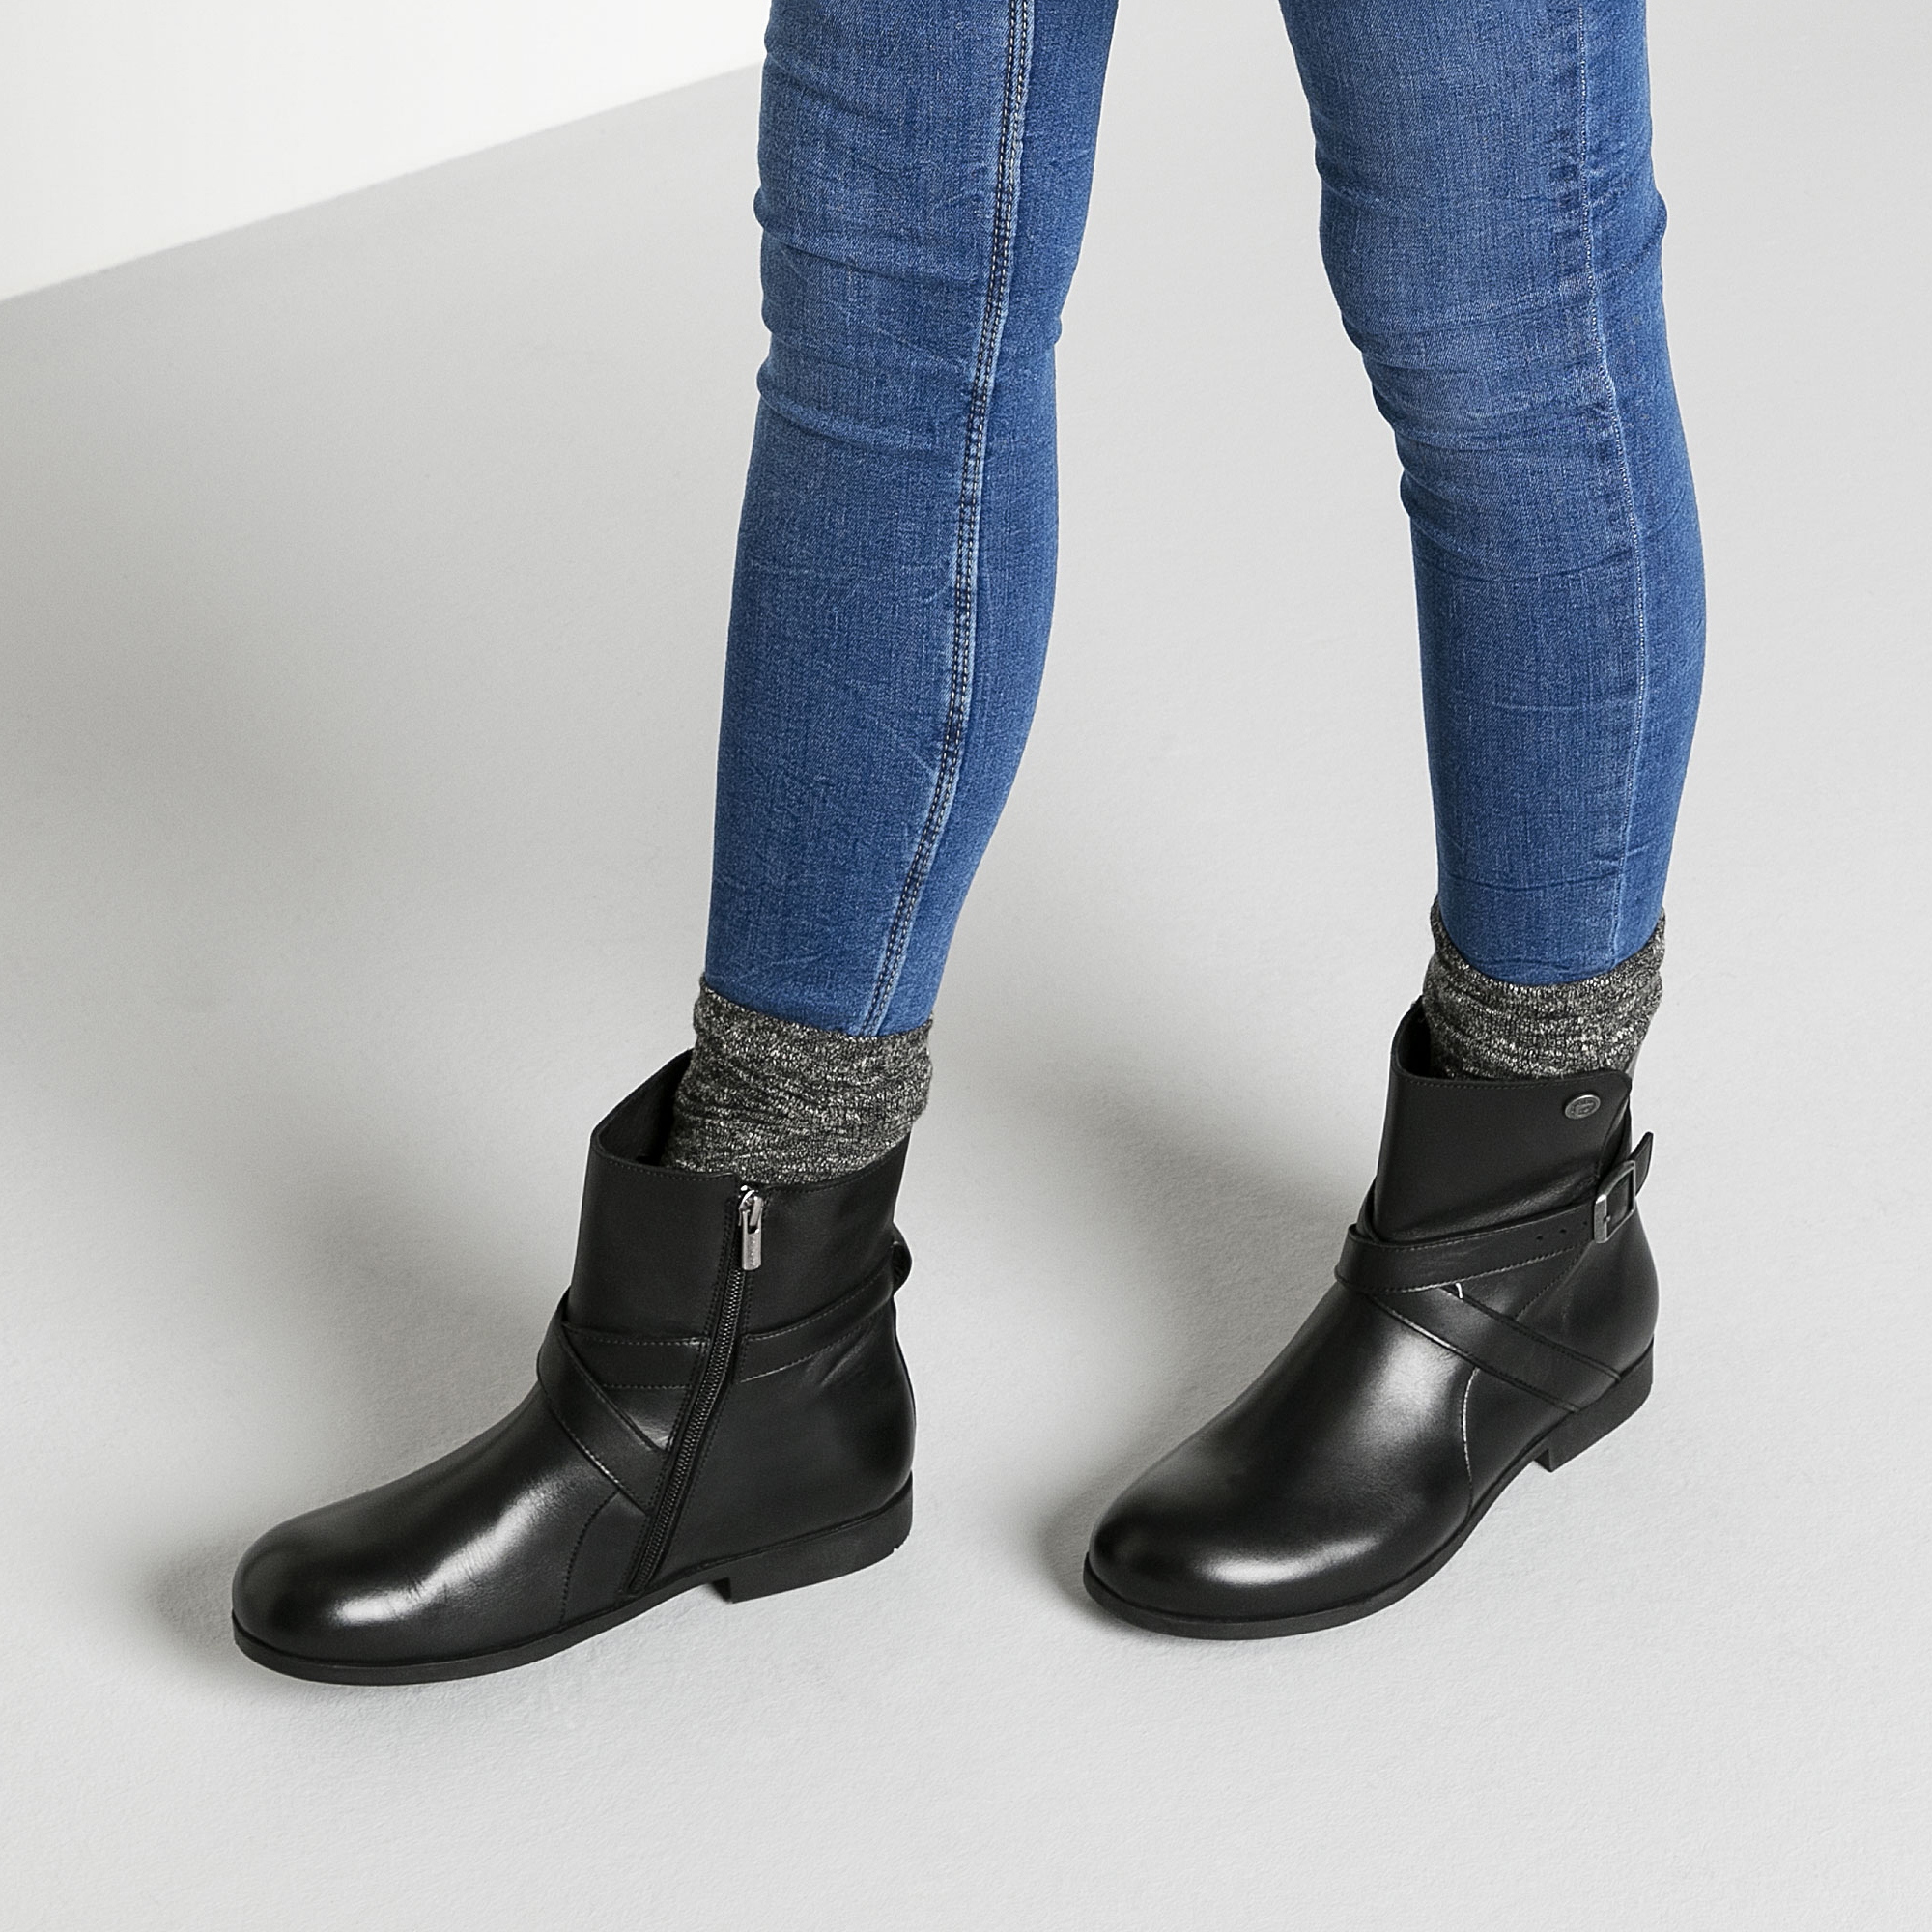 birkenstock collins women's boot